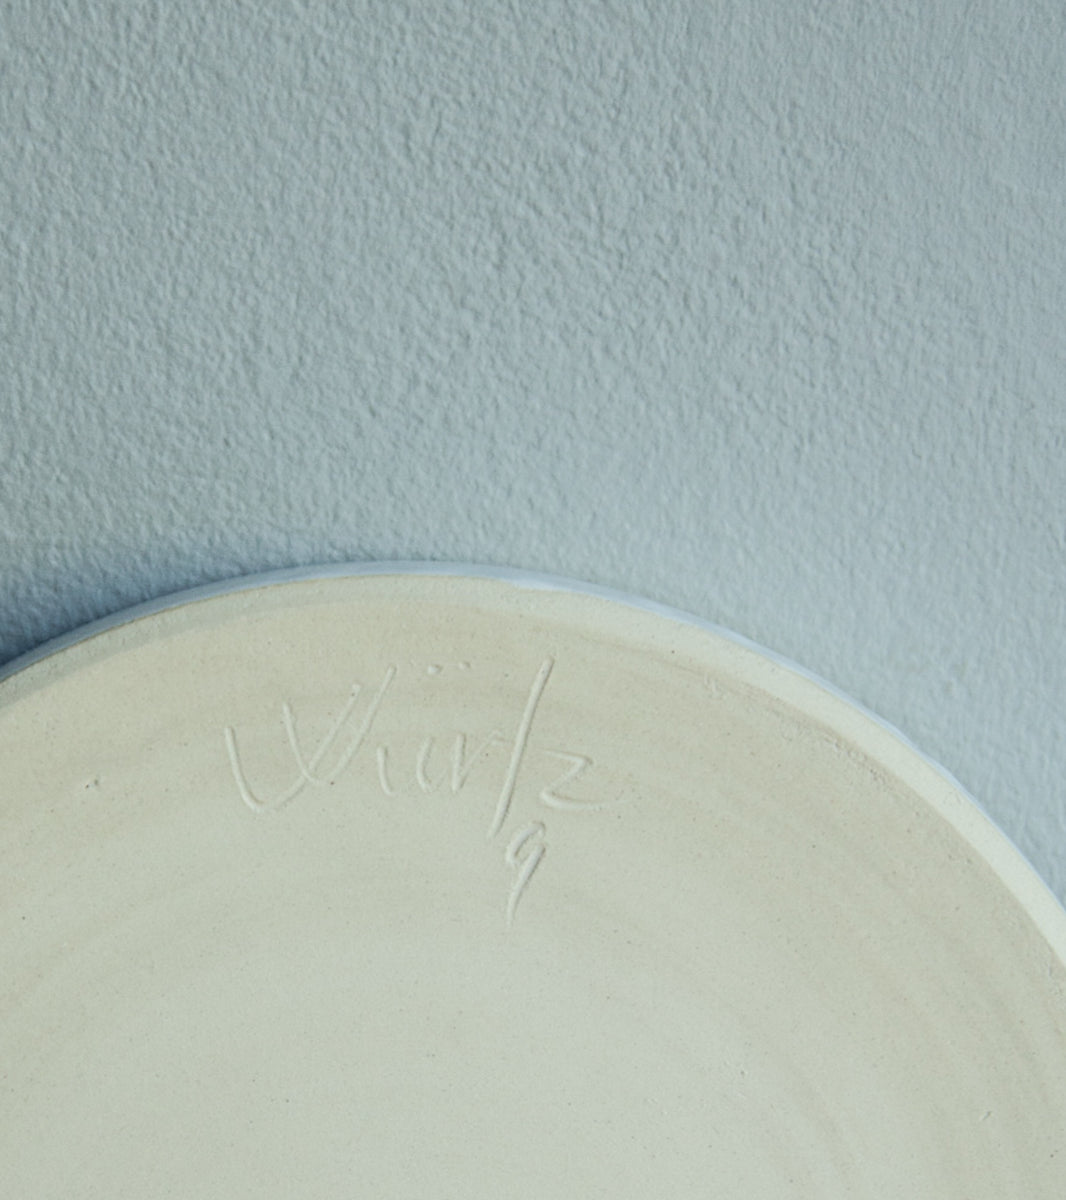 Medium Rimmed Plate 4 Ivory White Glaze Kasper Würtz - Image 5